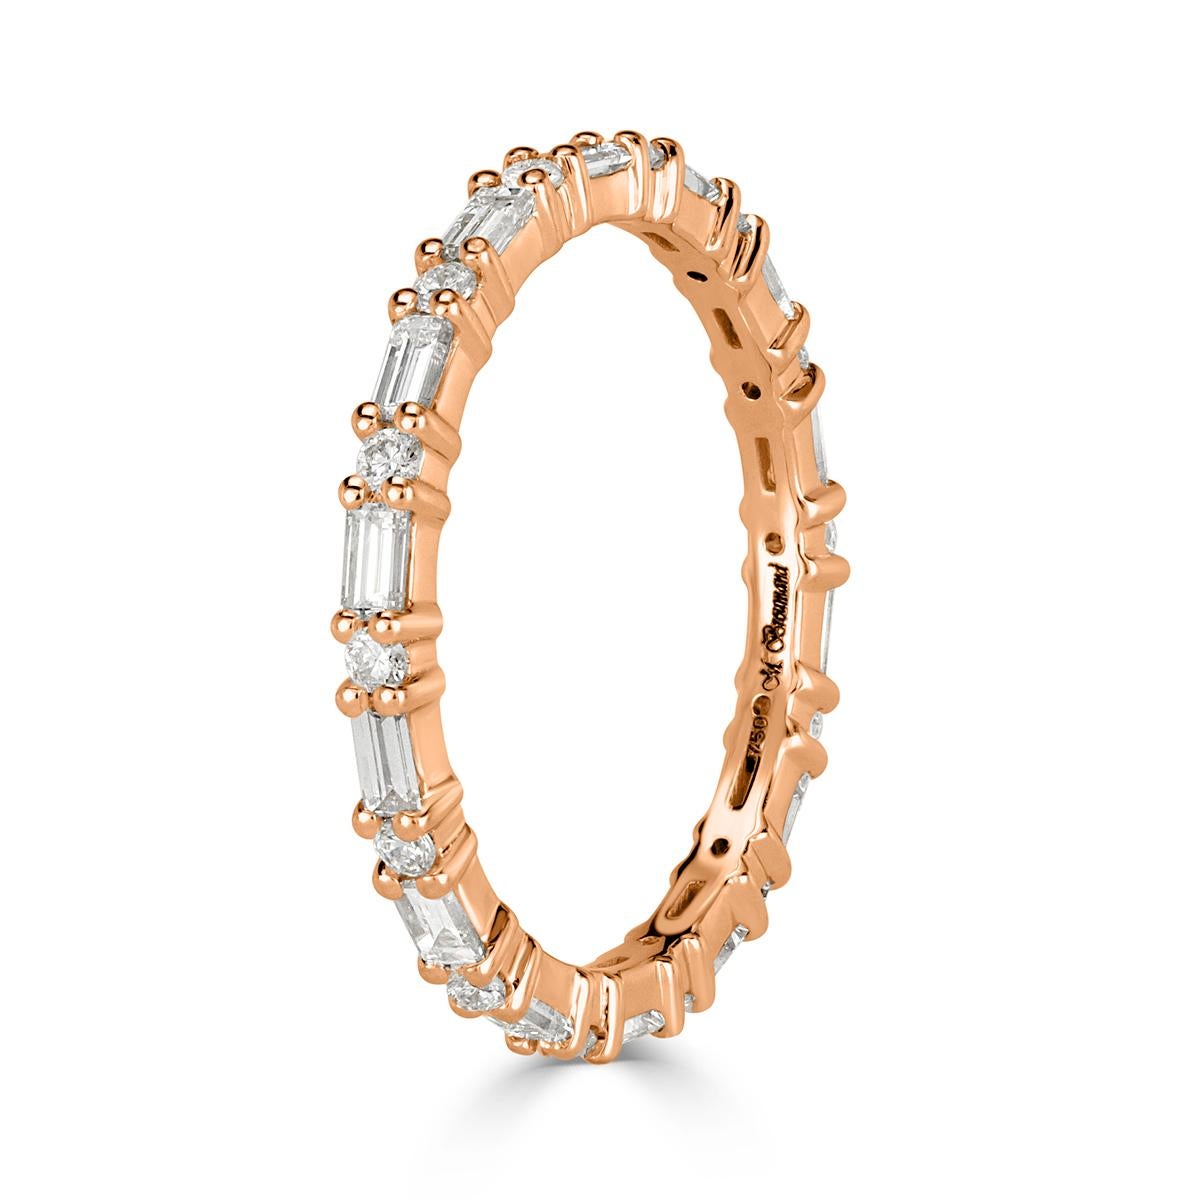 Fabriqué à la main à la perfection en or rose 18 carats, ce superbe anneau éternel en diamants met en valeur 0,77 ct de diamants blancs ronds et baguettes sertis de manière alternée. Les diamants sont classés E-F en couleur, VS1-VS2 en pureté.